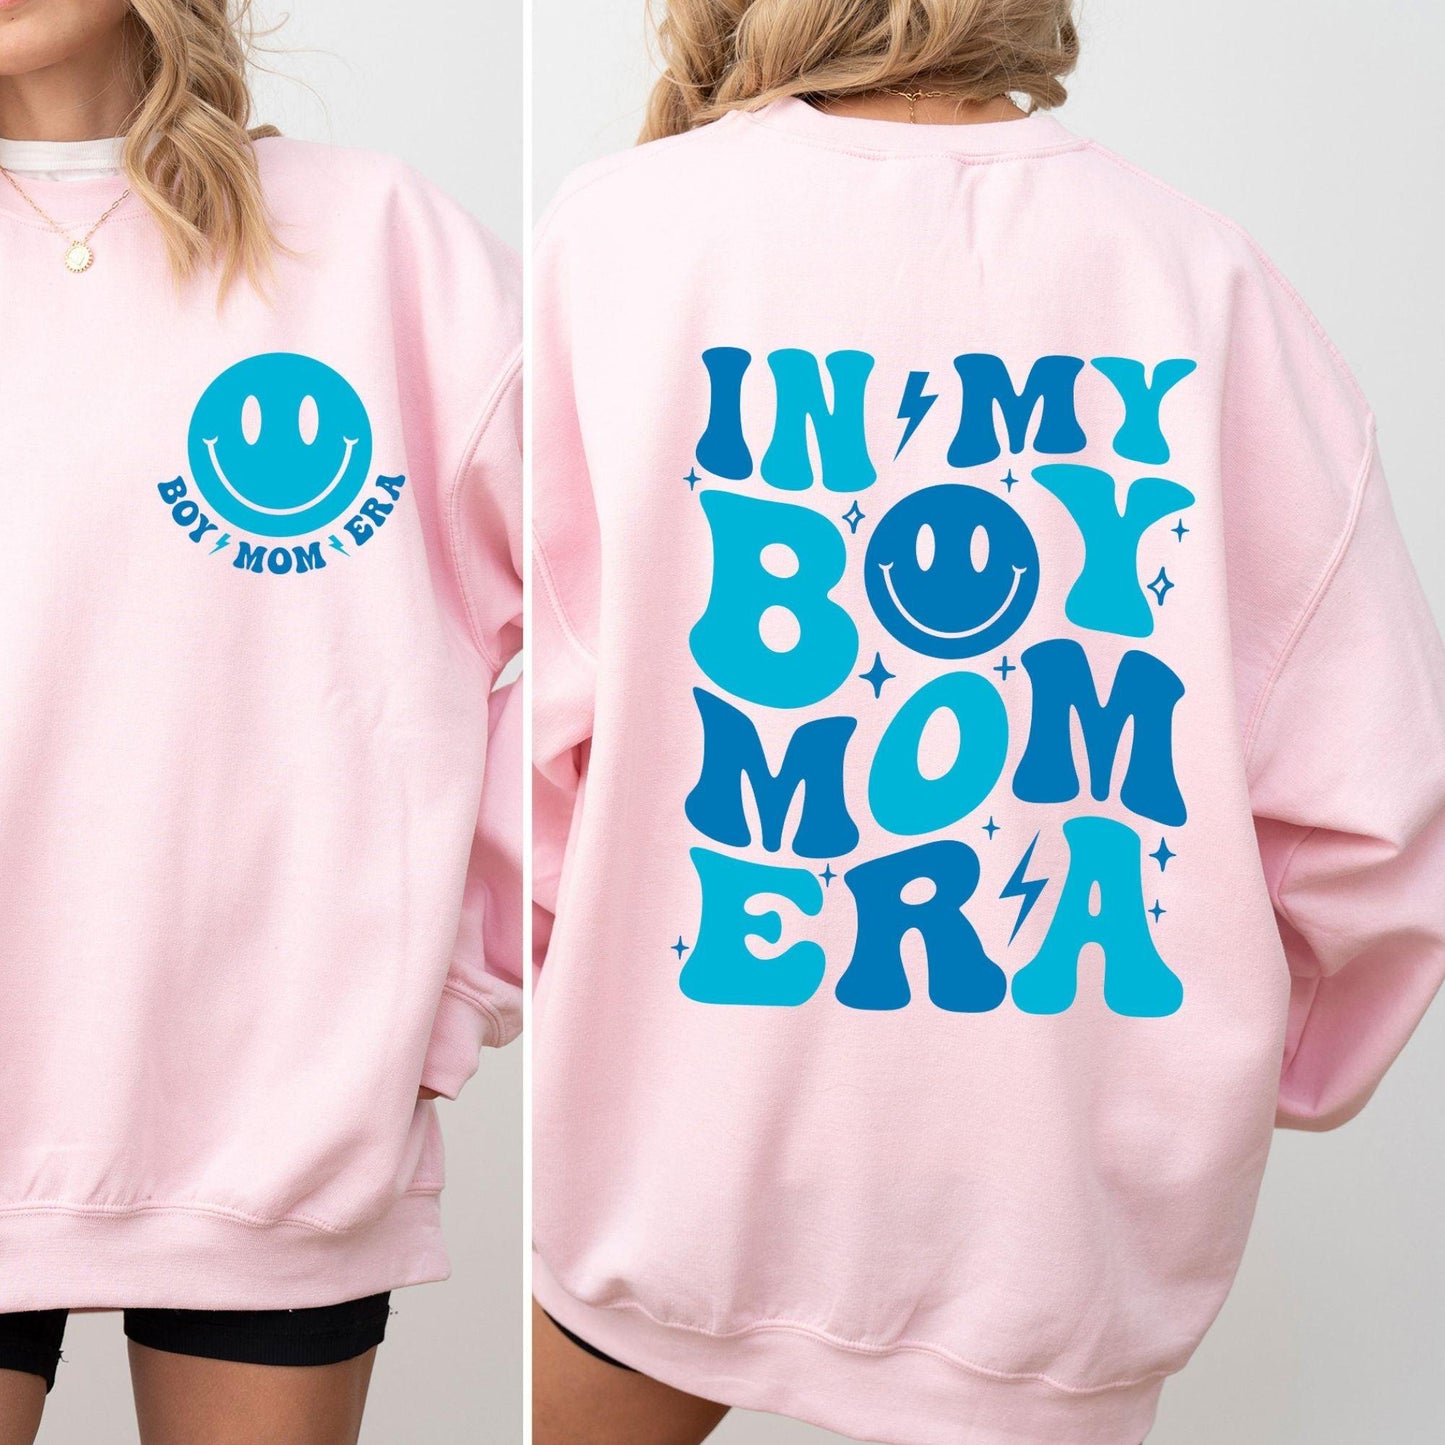 In My Boy Mom Era Sweatshirt - Boy Mom Club Shirt - GiftHaus